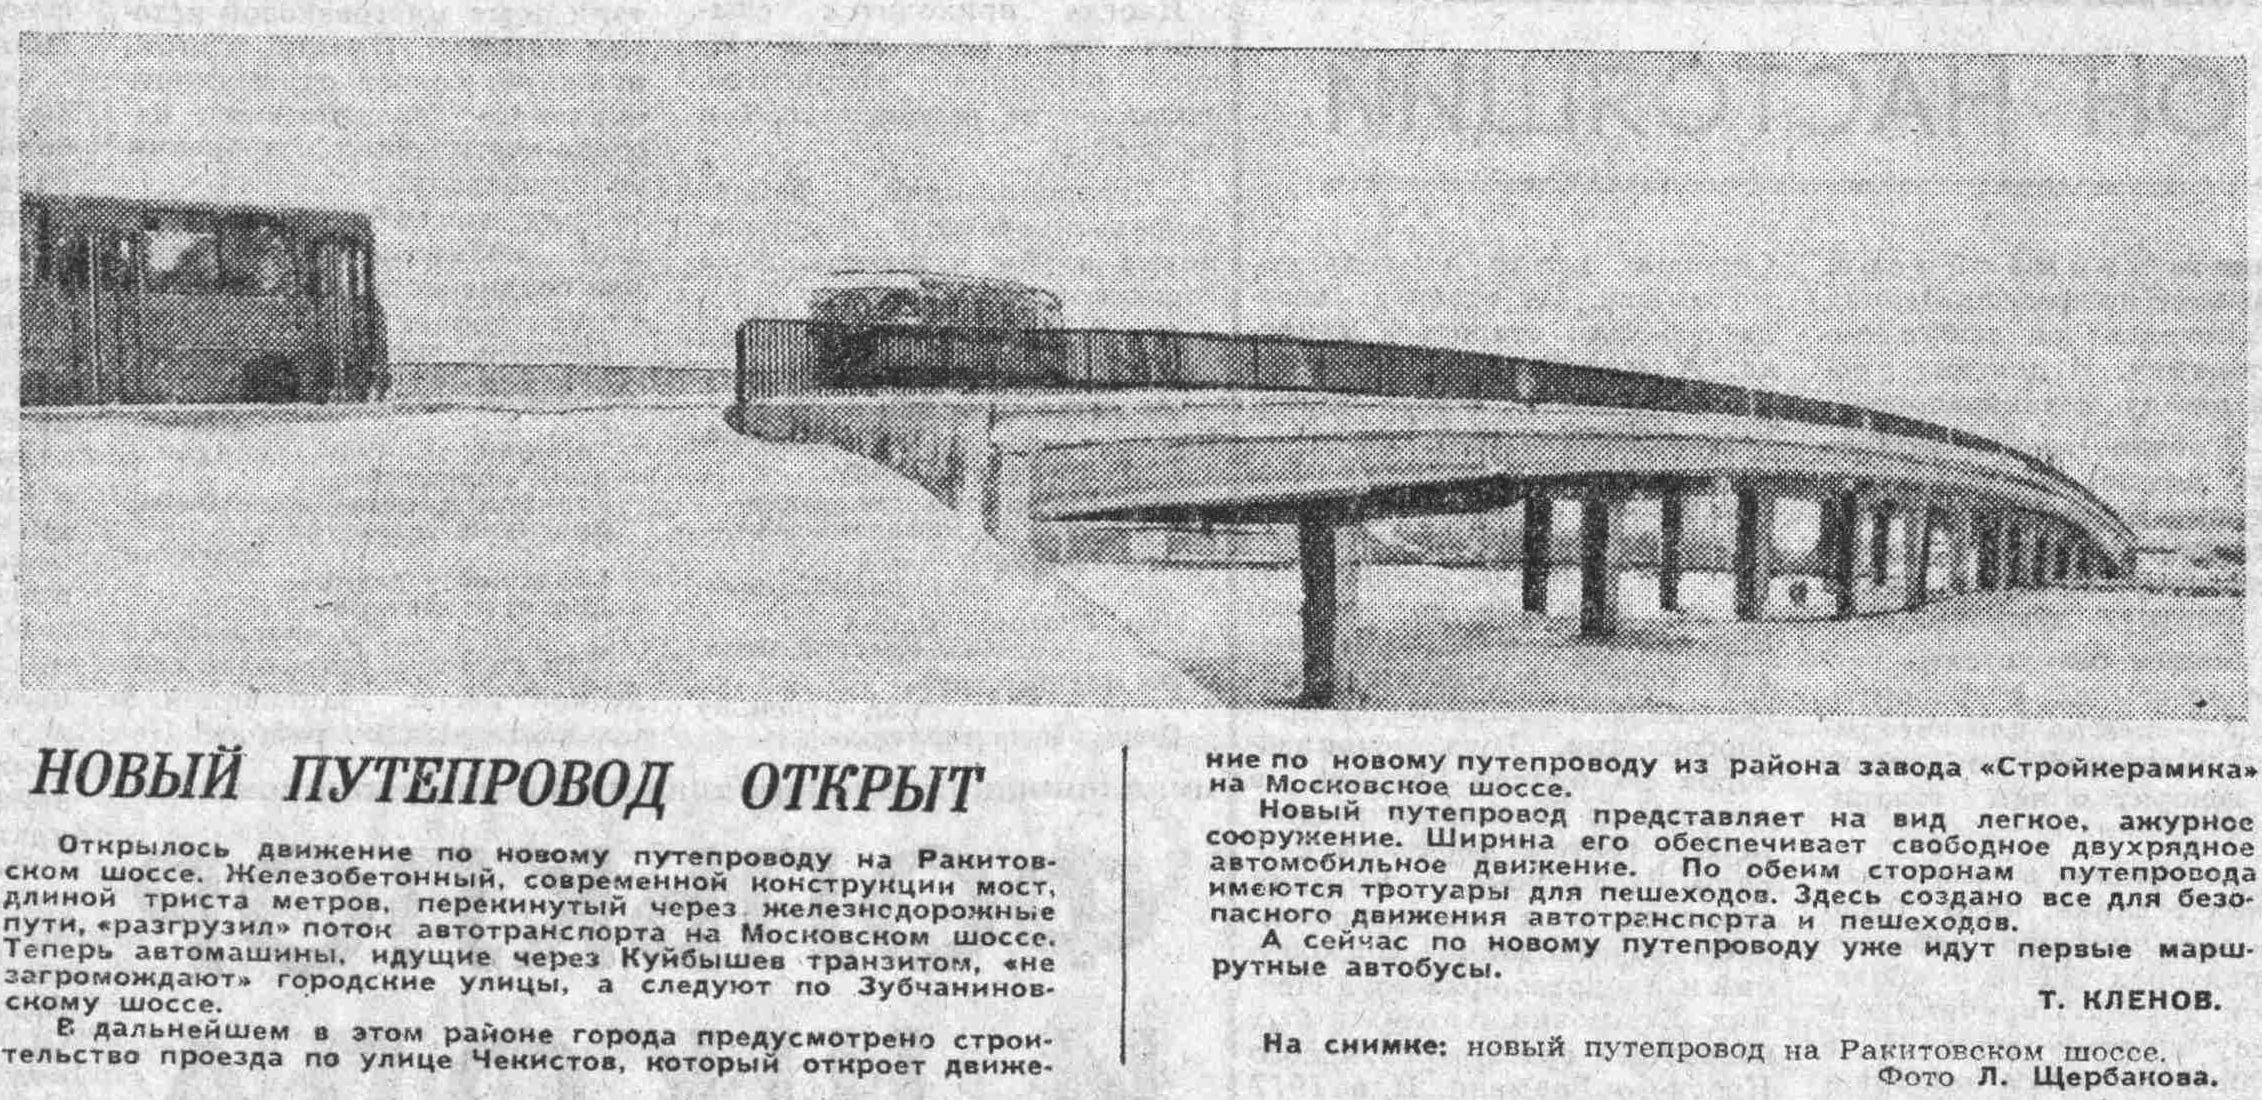 Ракитовское-ФОТО-16-ВКа-1978-01-06-открытие Ракит. моста-min